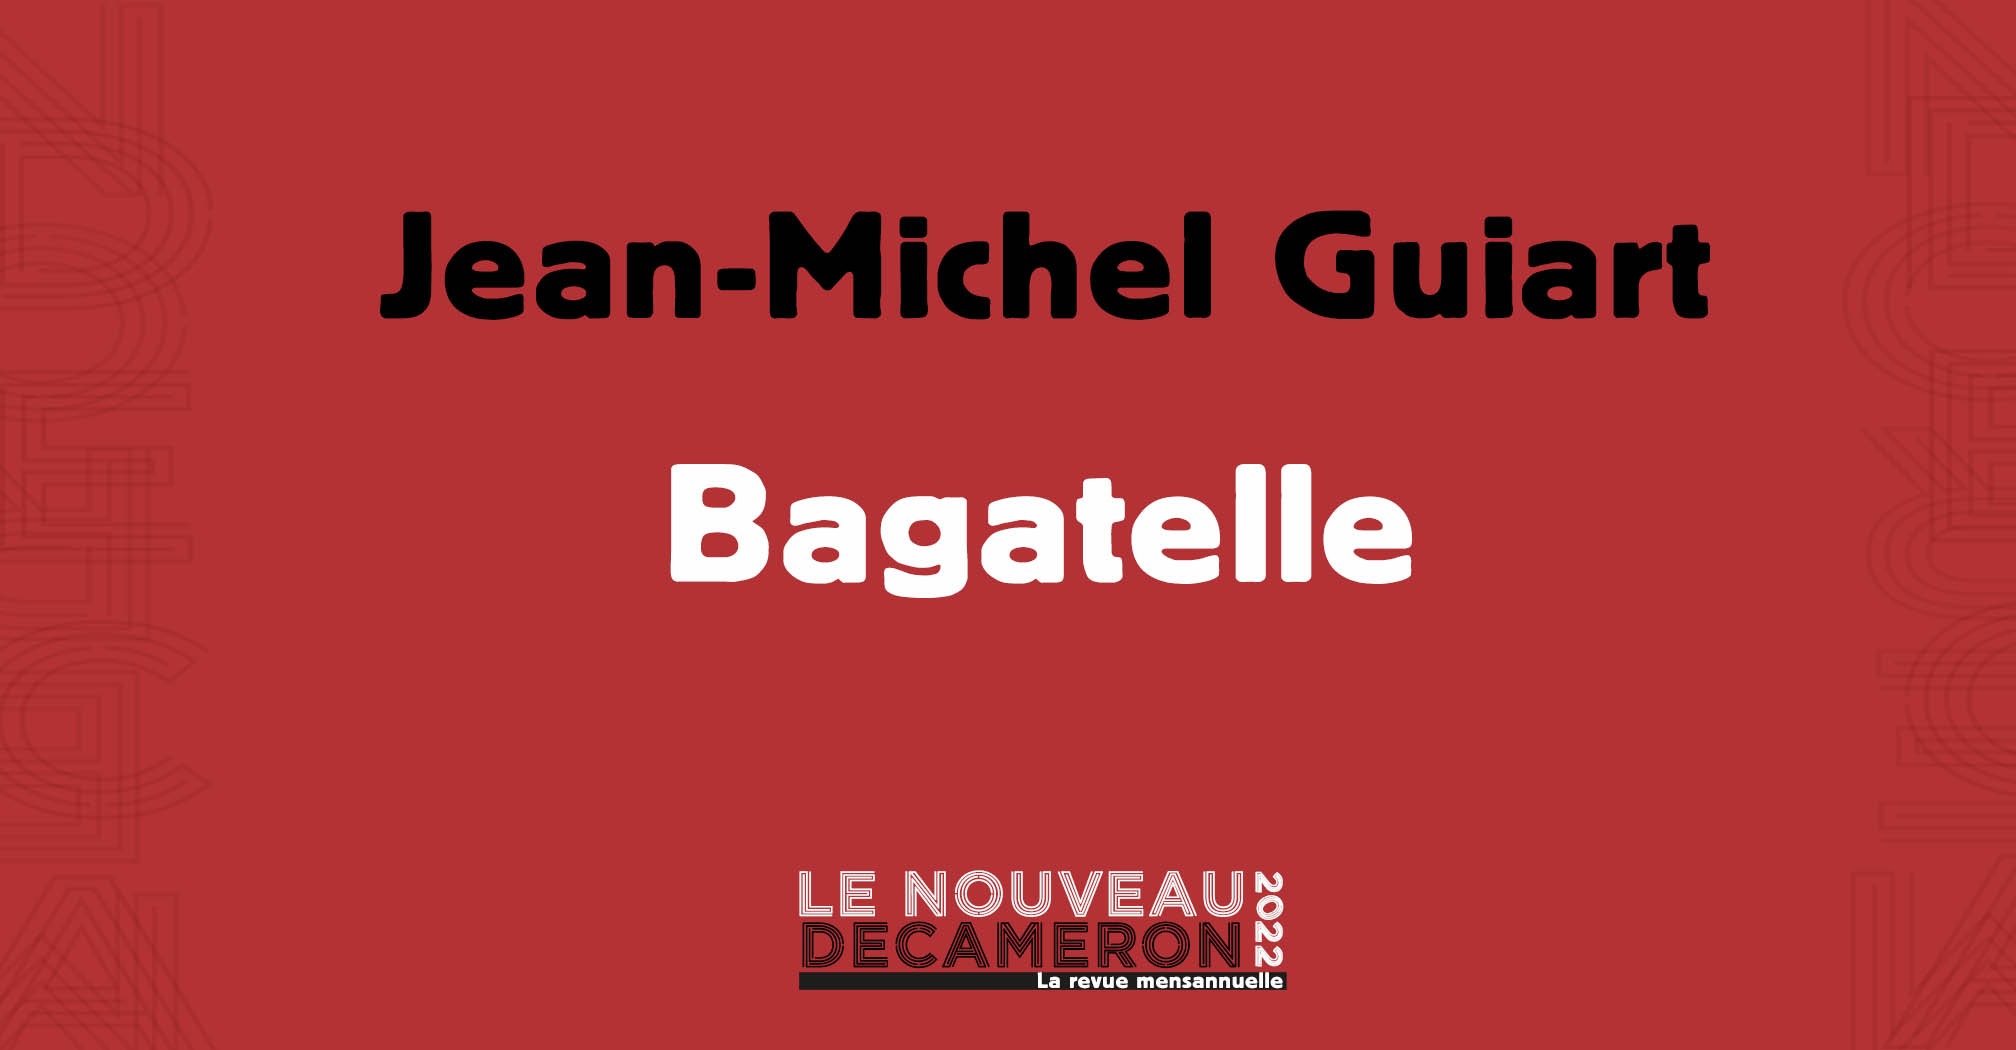 Jean-Michel Guiart - Bagatelle